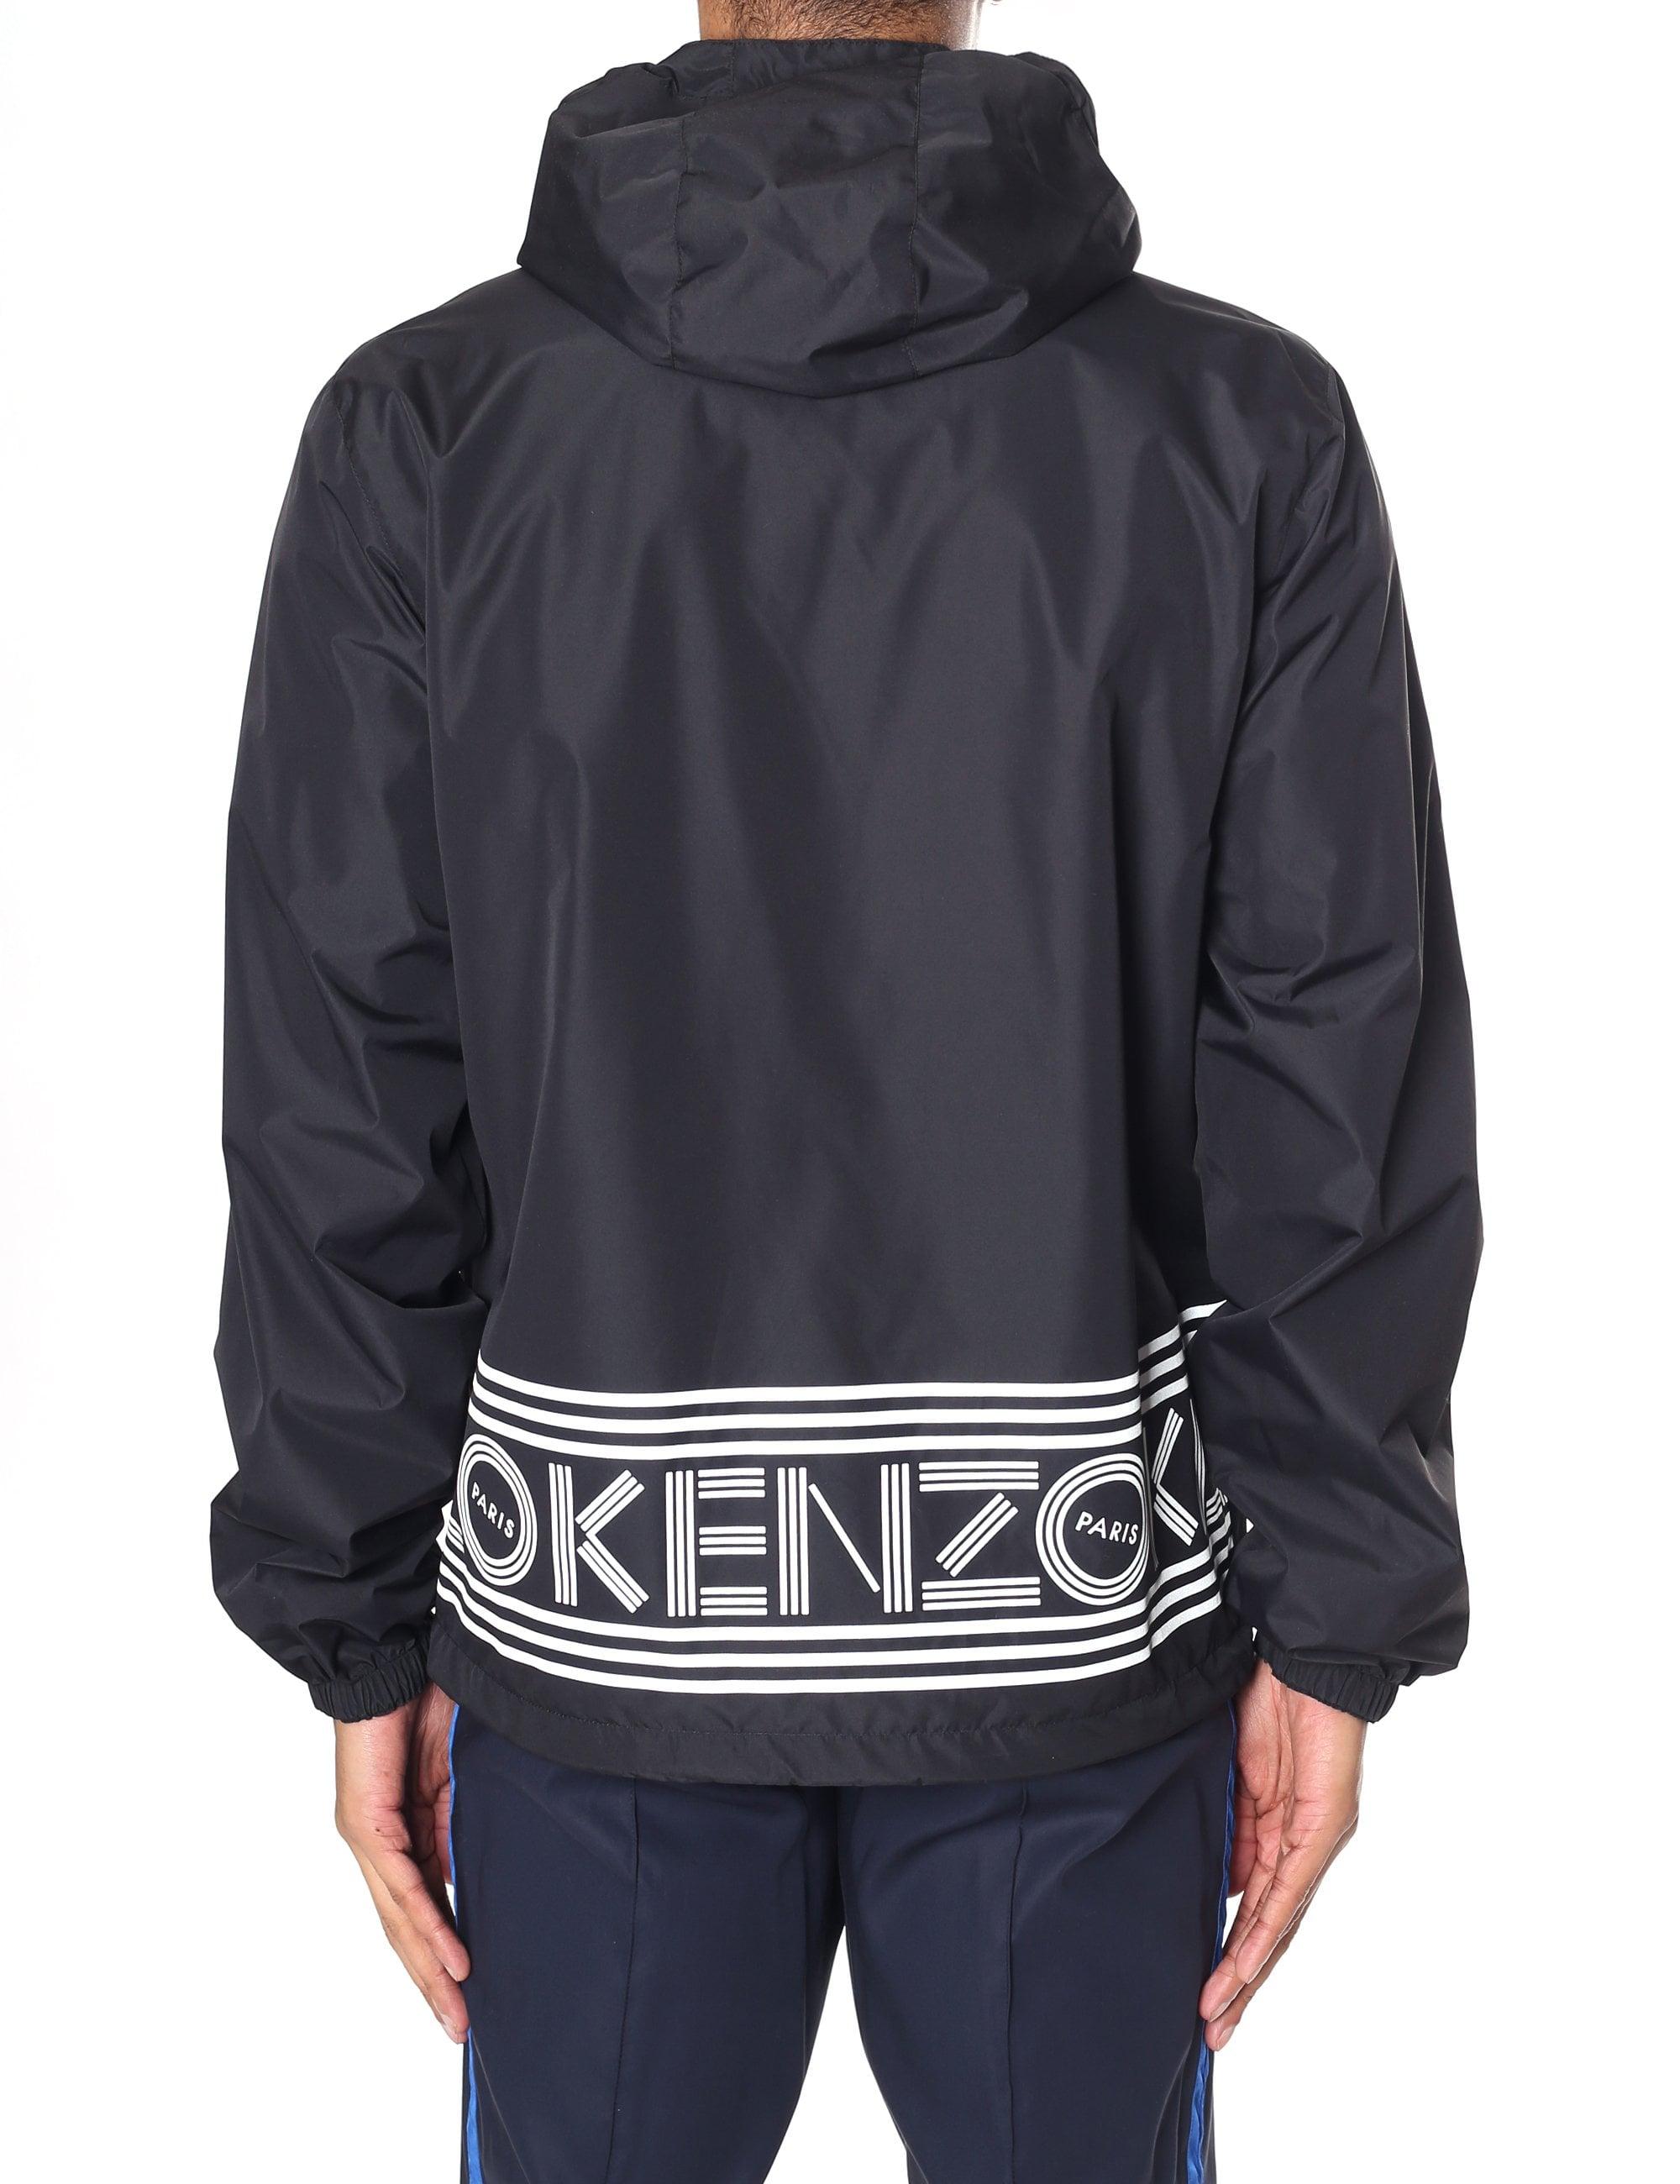 KENZO Synthetic Reversible Logo Windbreaker Jacket in Black for Men - Lyst